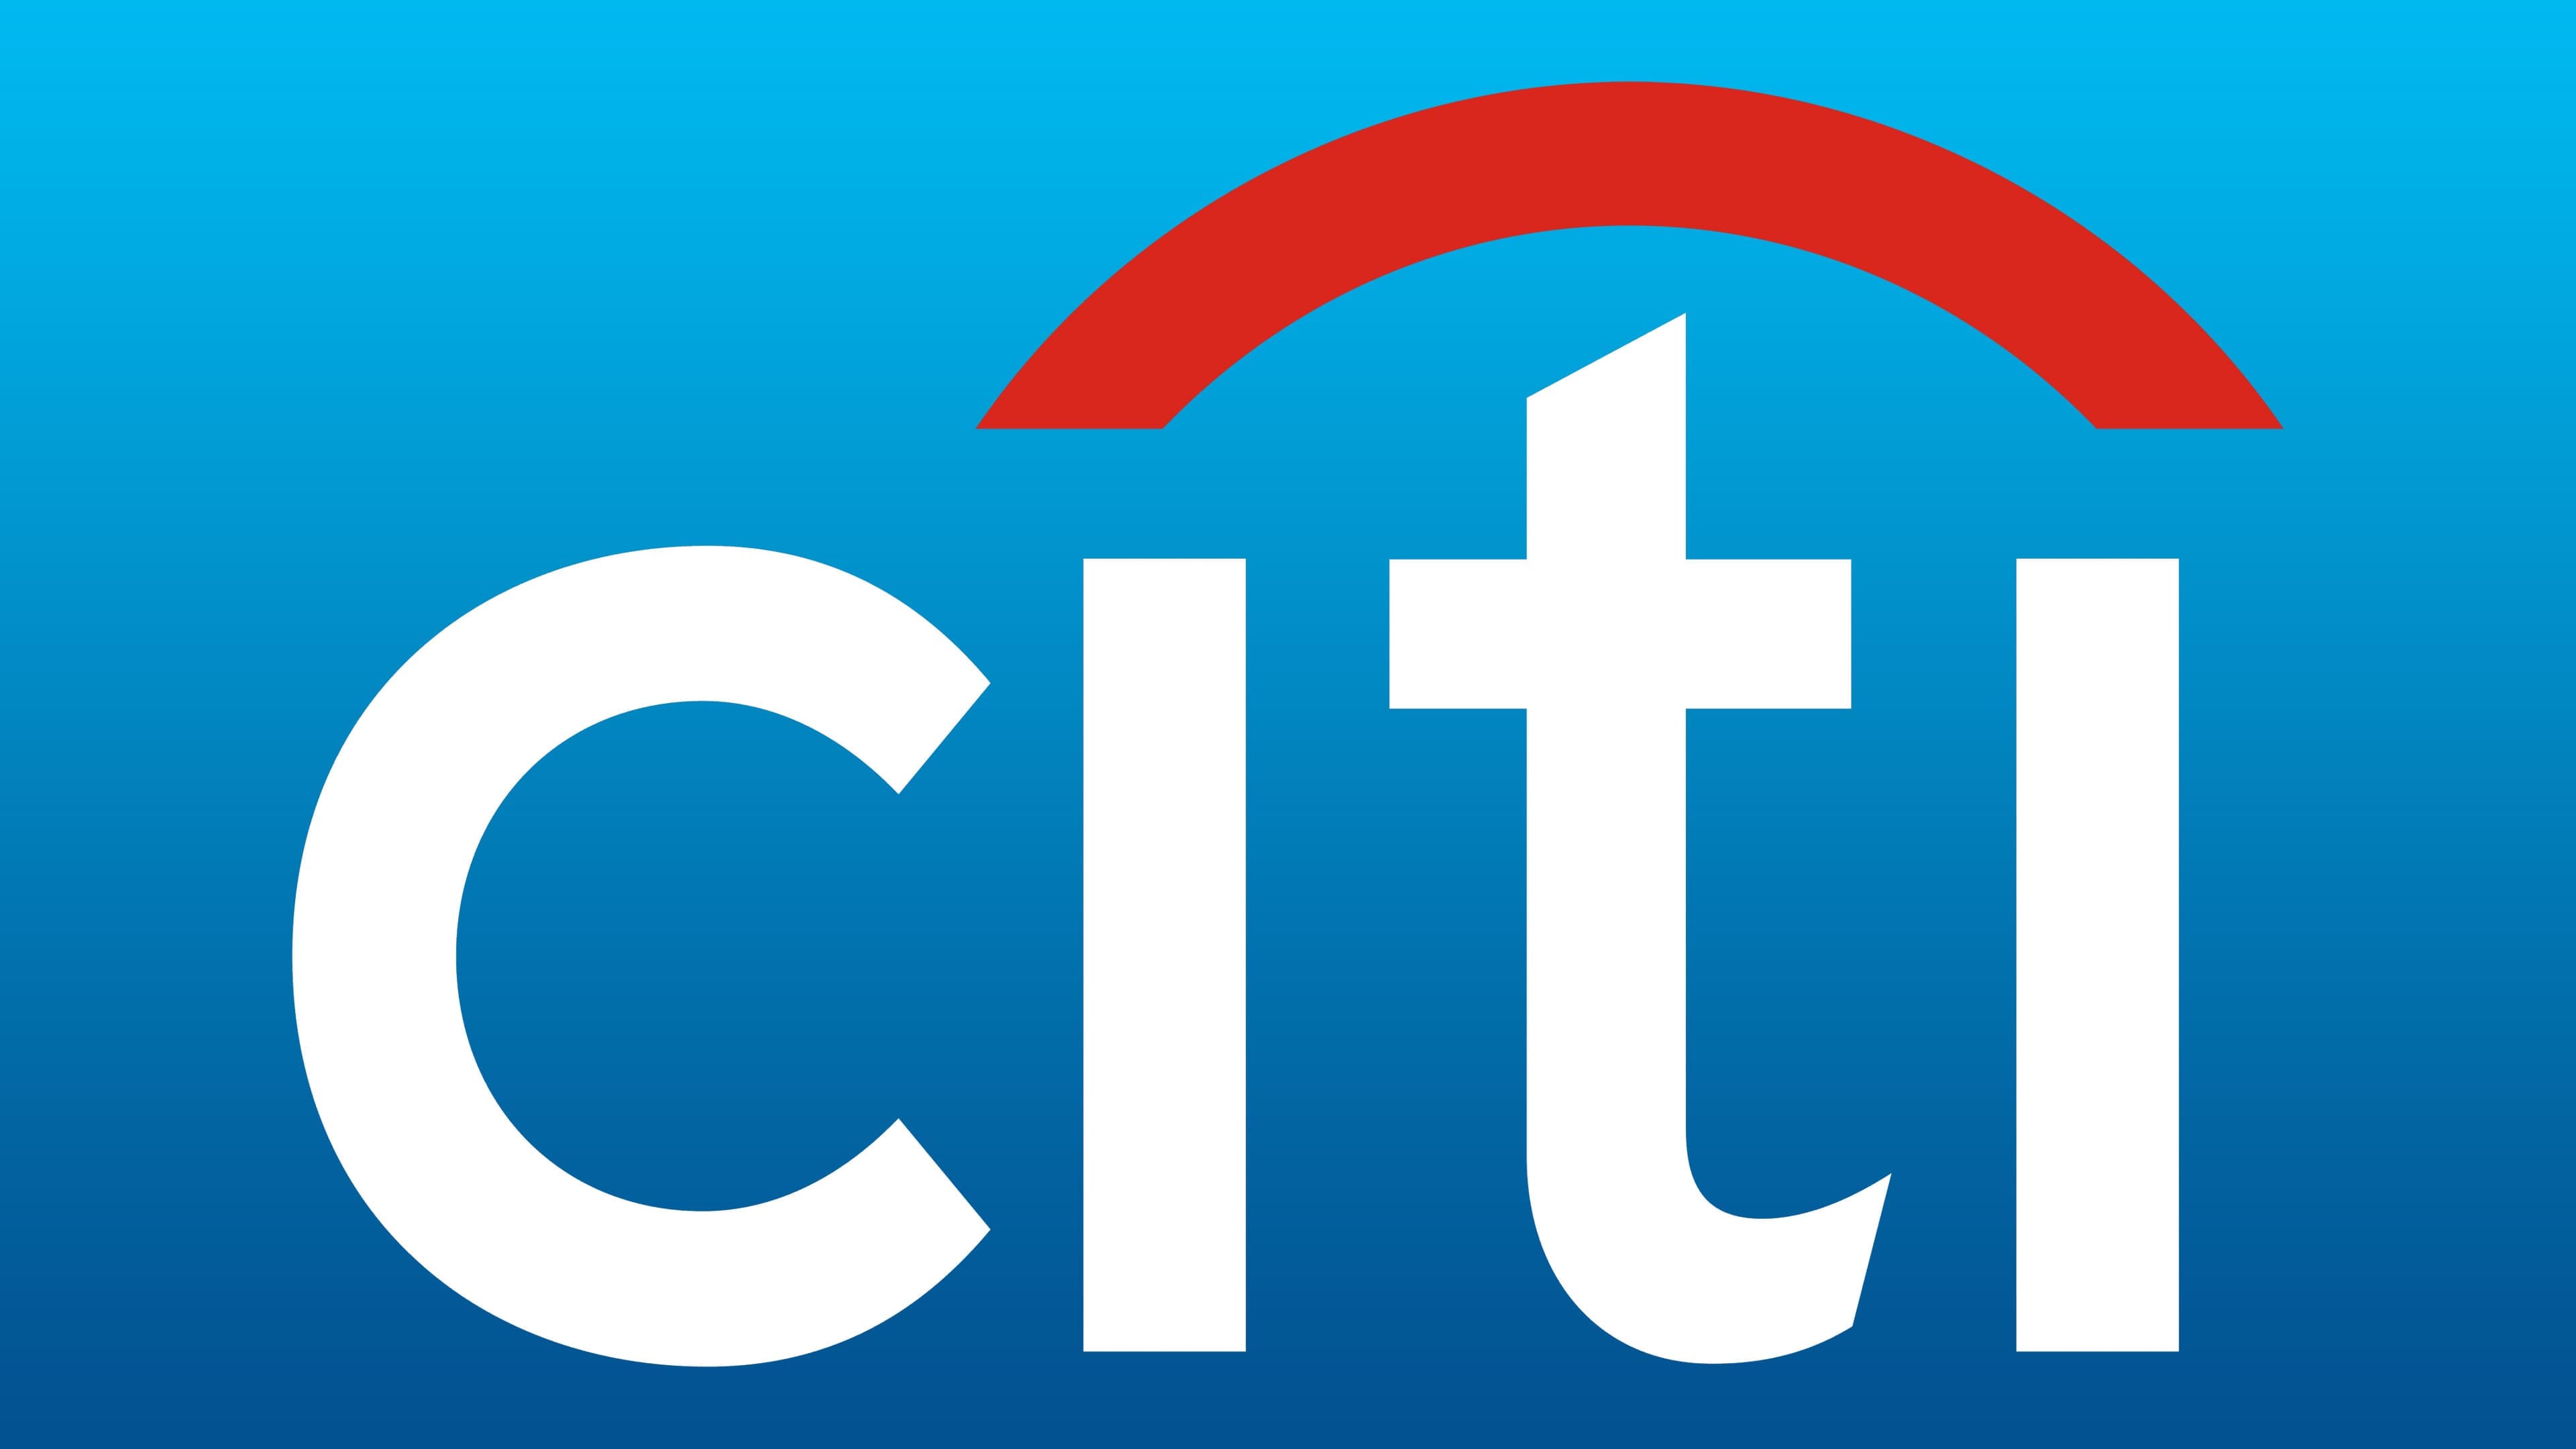 Логотип Citigroup, символ, значення, історія, PNG, бренд